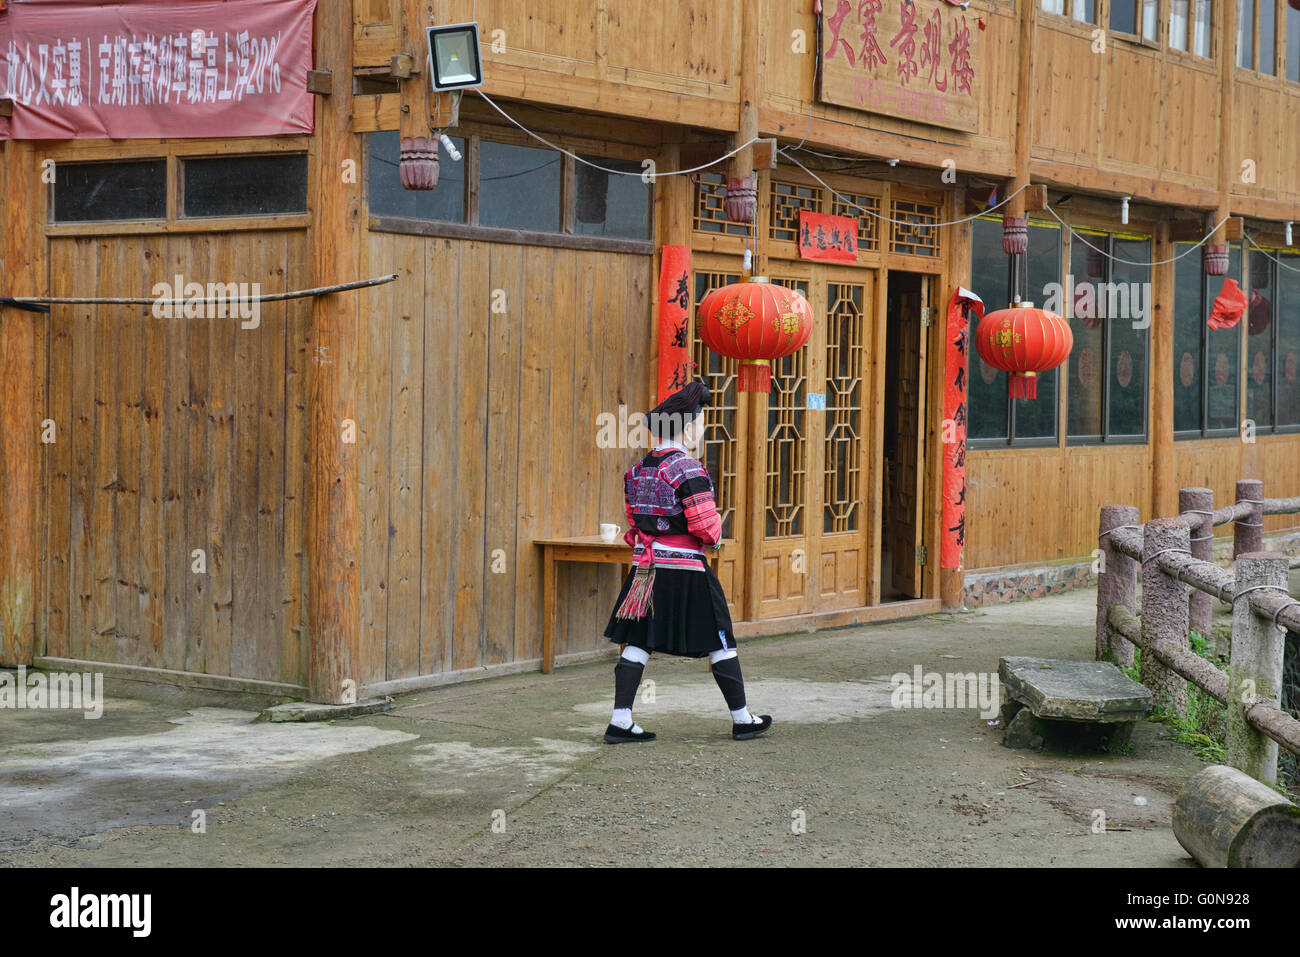 Yao traditionnels lodge et maison, région autonome du Guangxi, Dazhai, Chine Banque D'Images